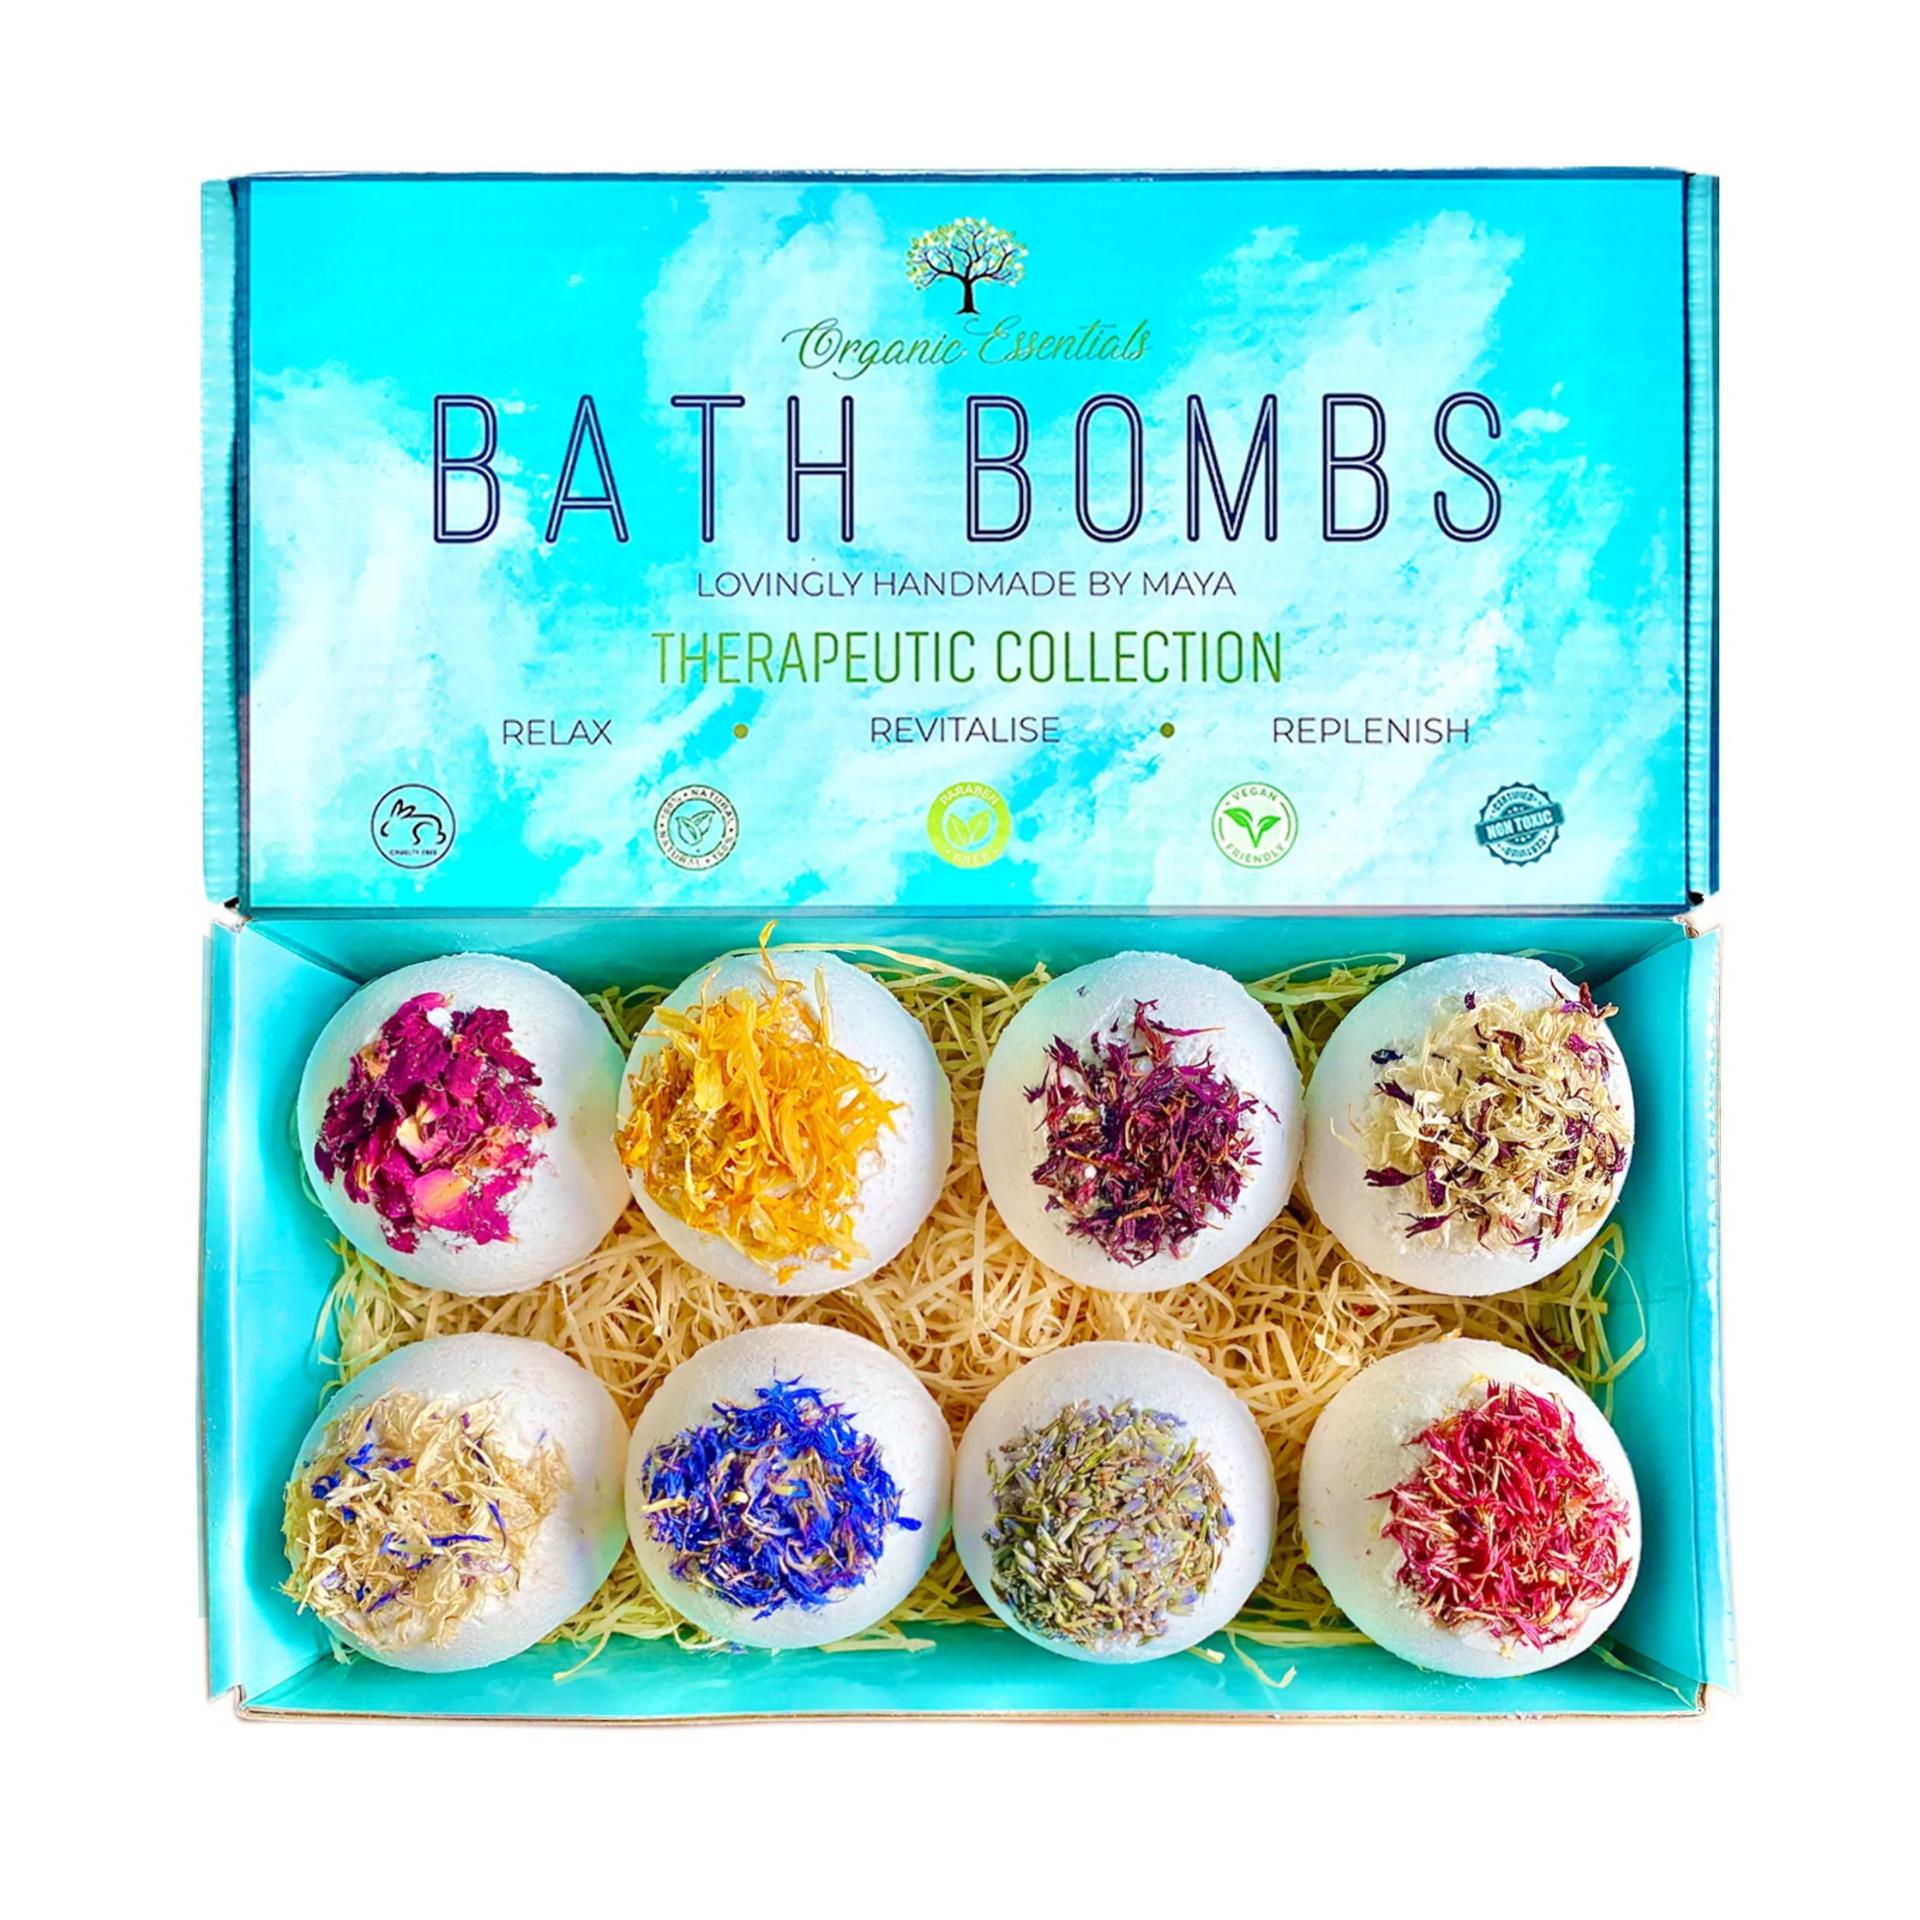 Luxury Therapeutic ‘Purity’ Bath Bomb Gift Set